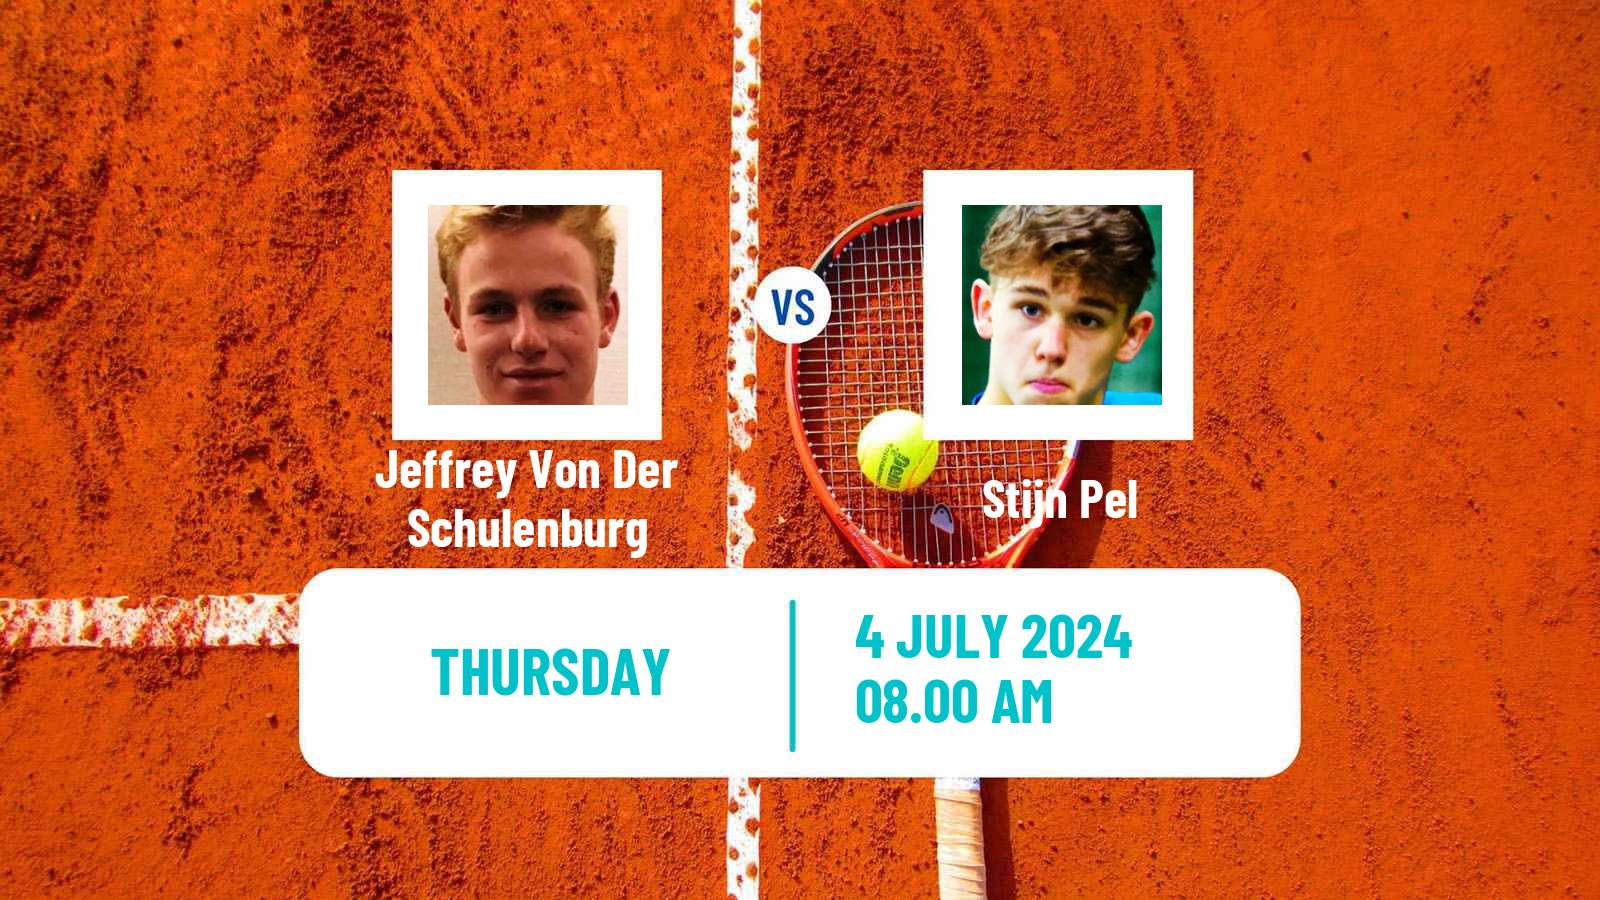 Tennis ITF M15 Amstelveen Men Jeffrey Von Der Schulenburg - Stijn Pel